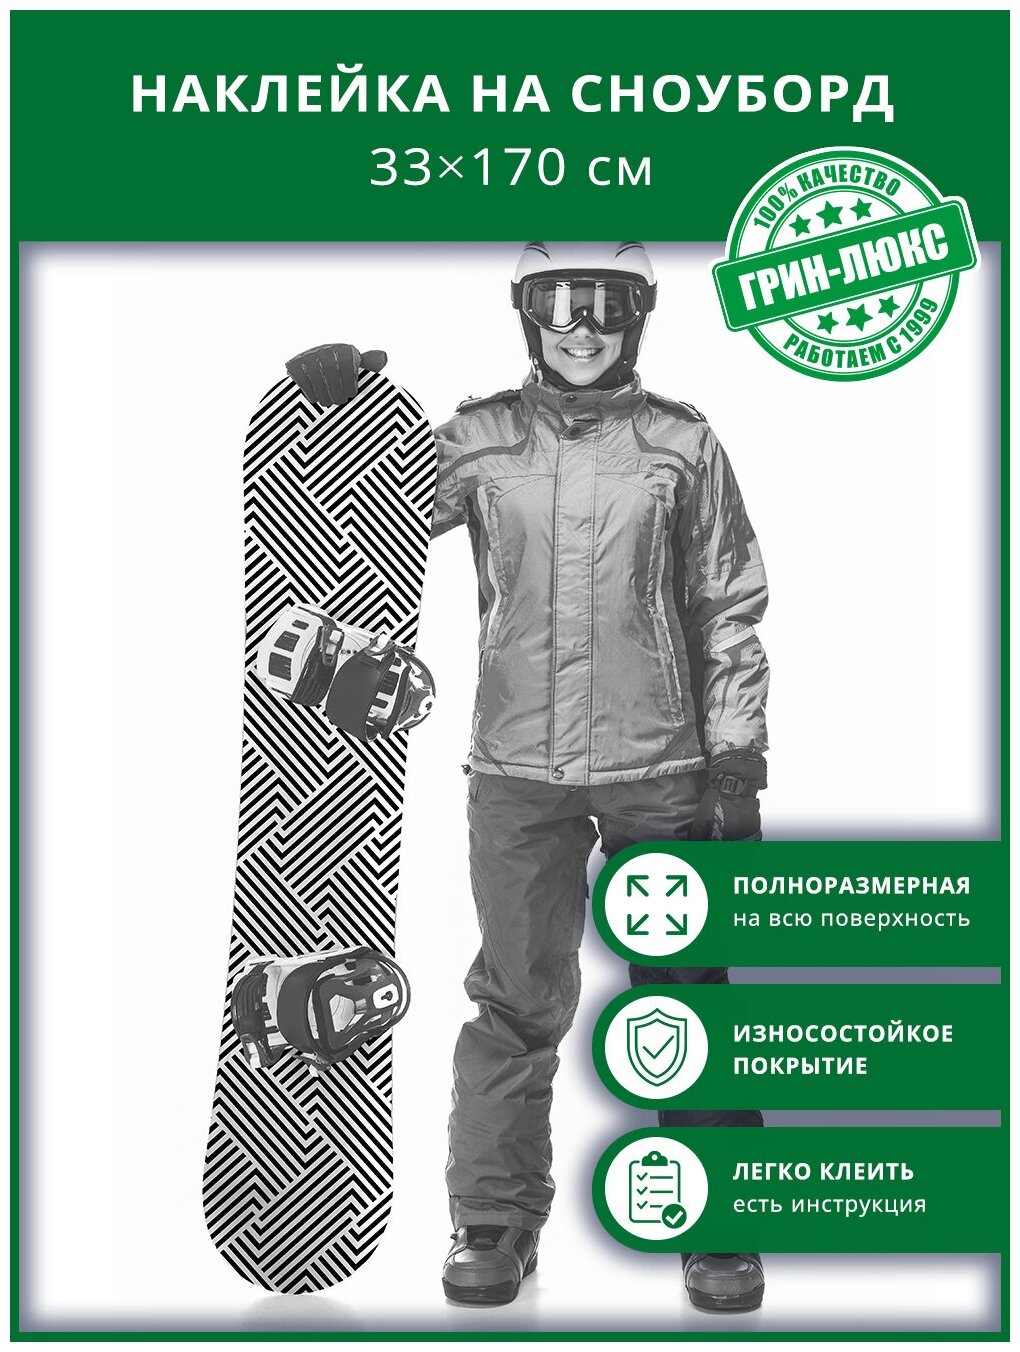 Наклейка на сноуборд с защитным глянцевым покрытием 33х170 см "Монохромная геометрия"